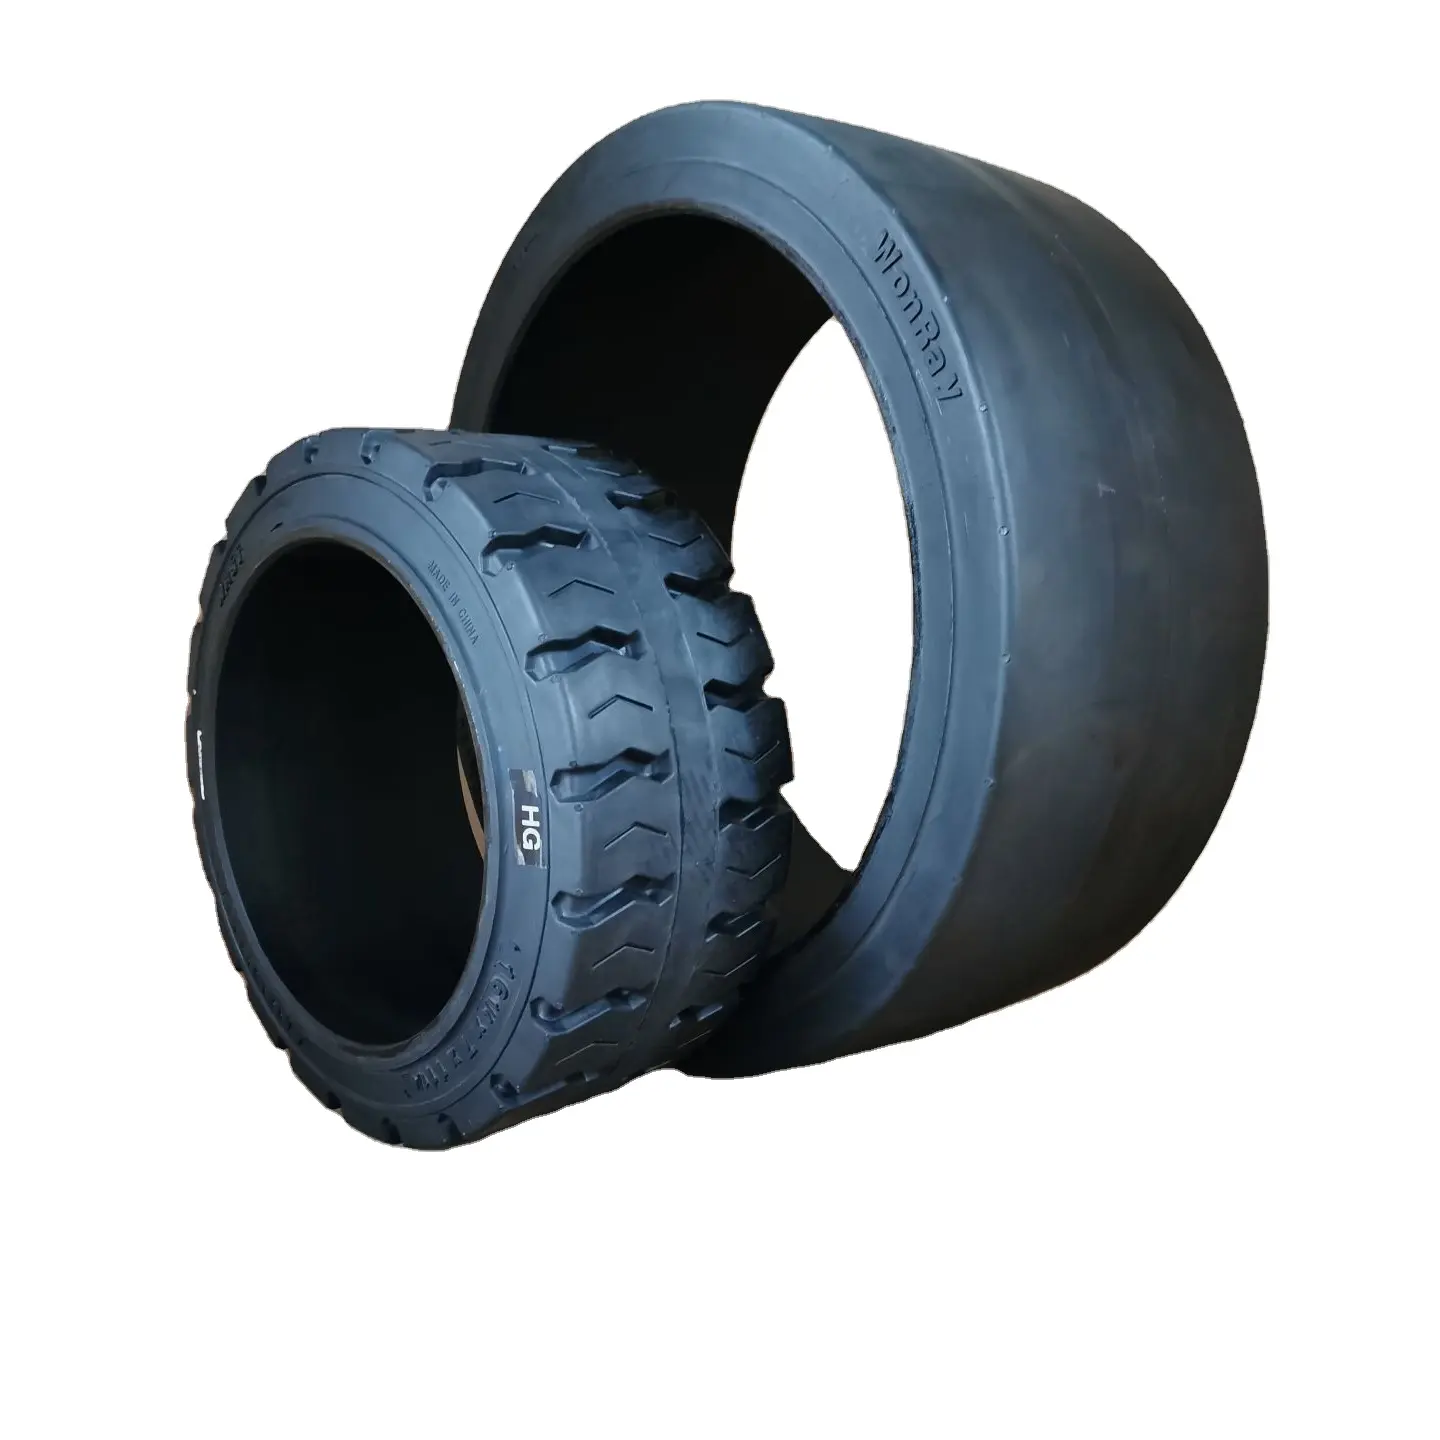 Pneus chineses marcas wonray jantes pneus sólidos empilhadeira industrial 22x12x16 imprensa sobre pneus com banda de rodagem lisa